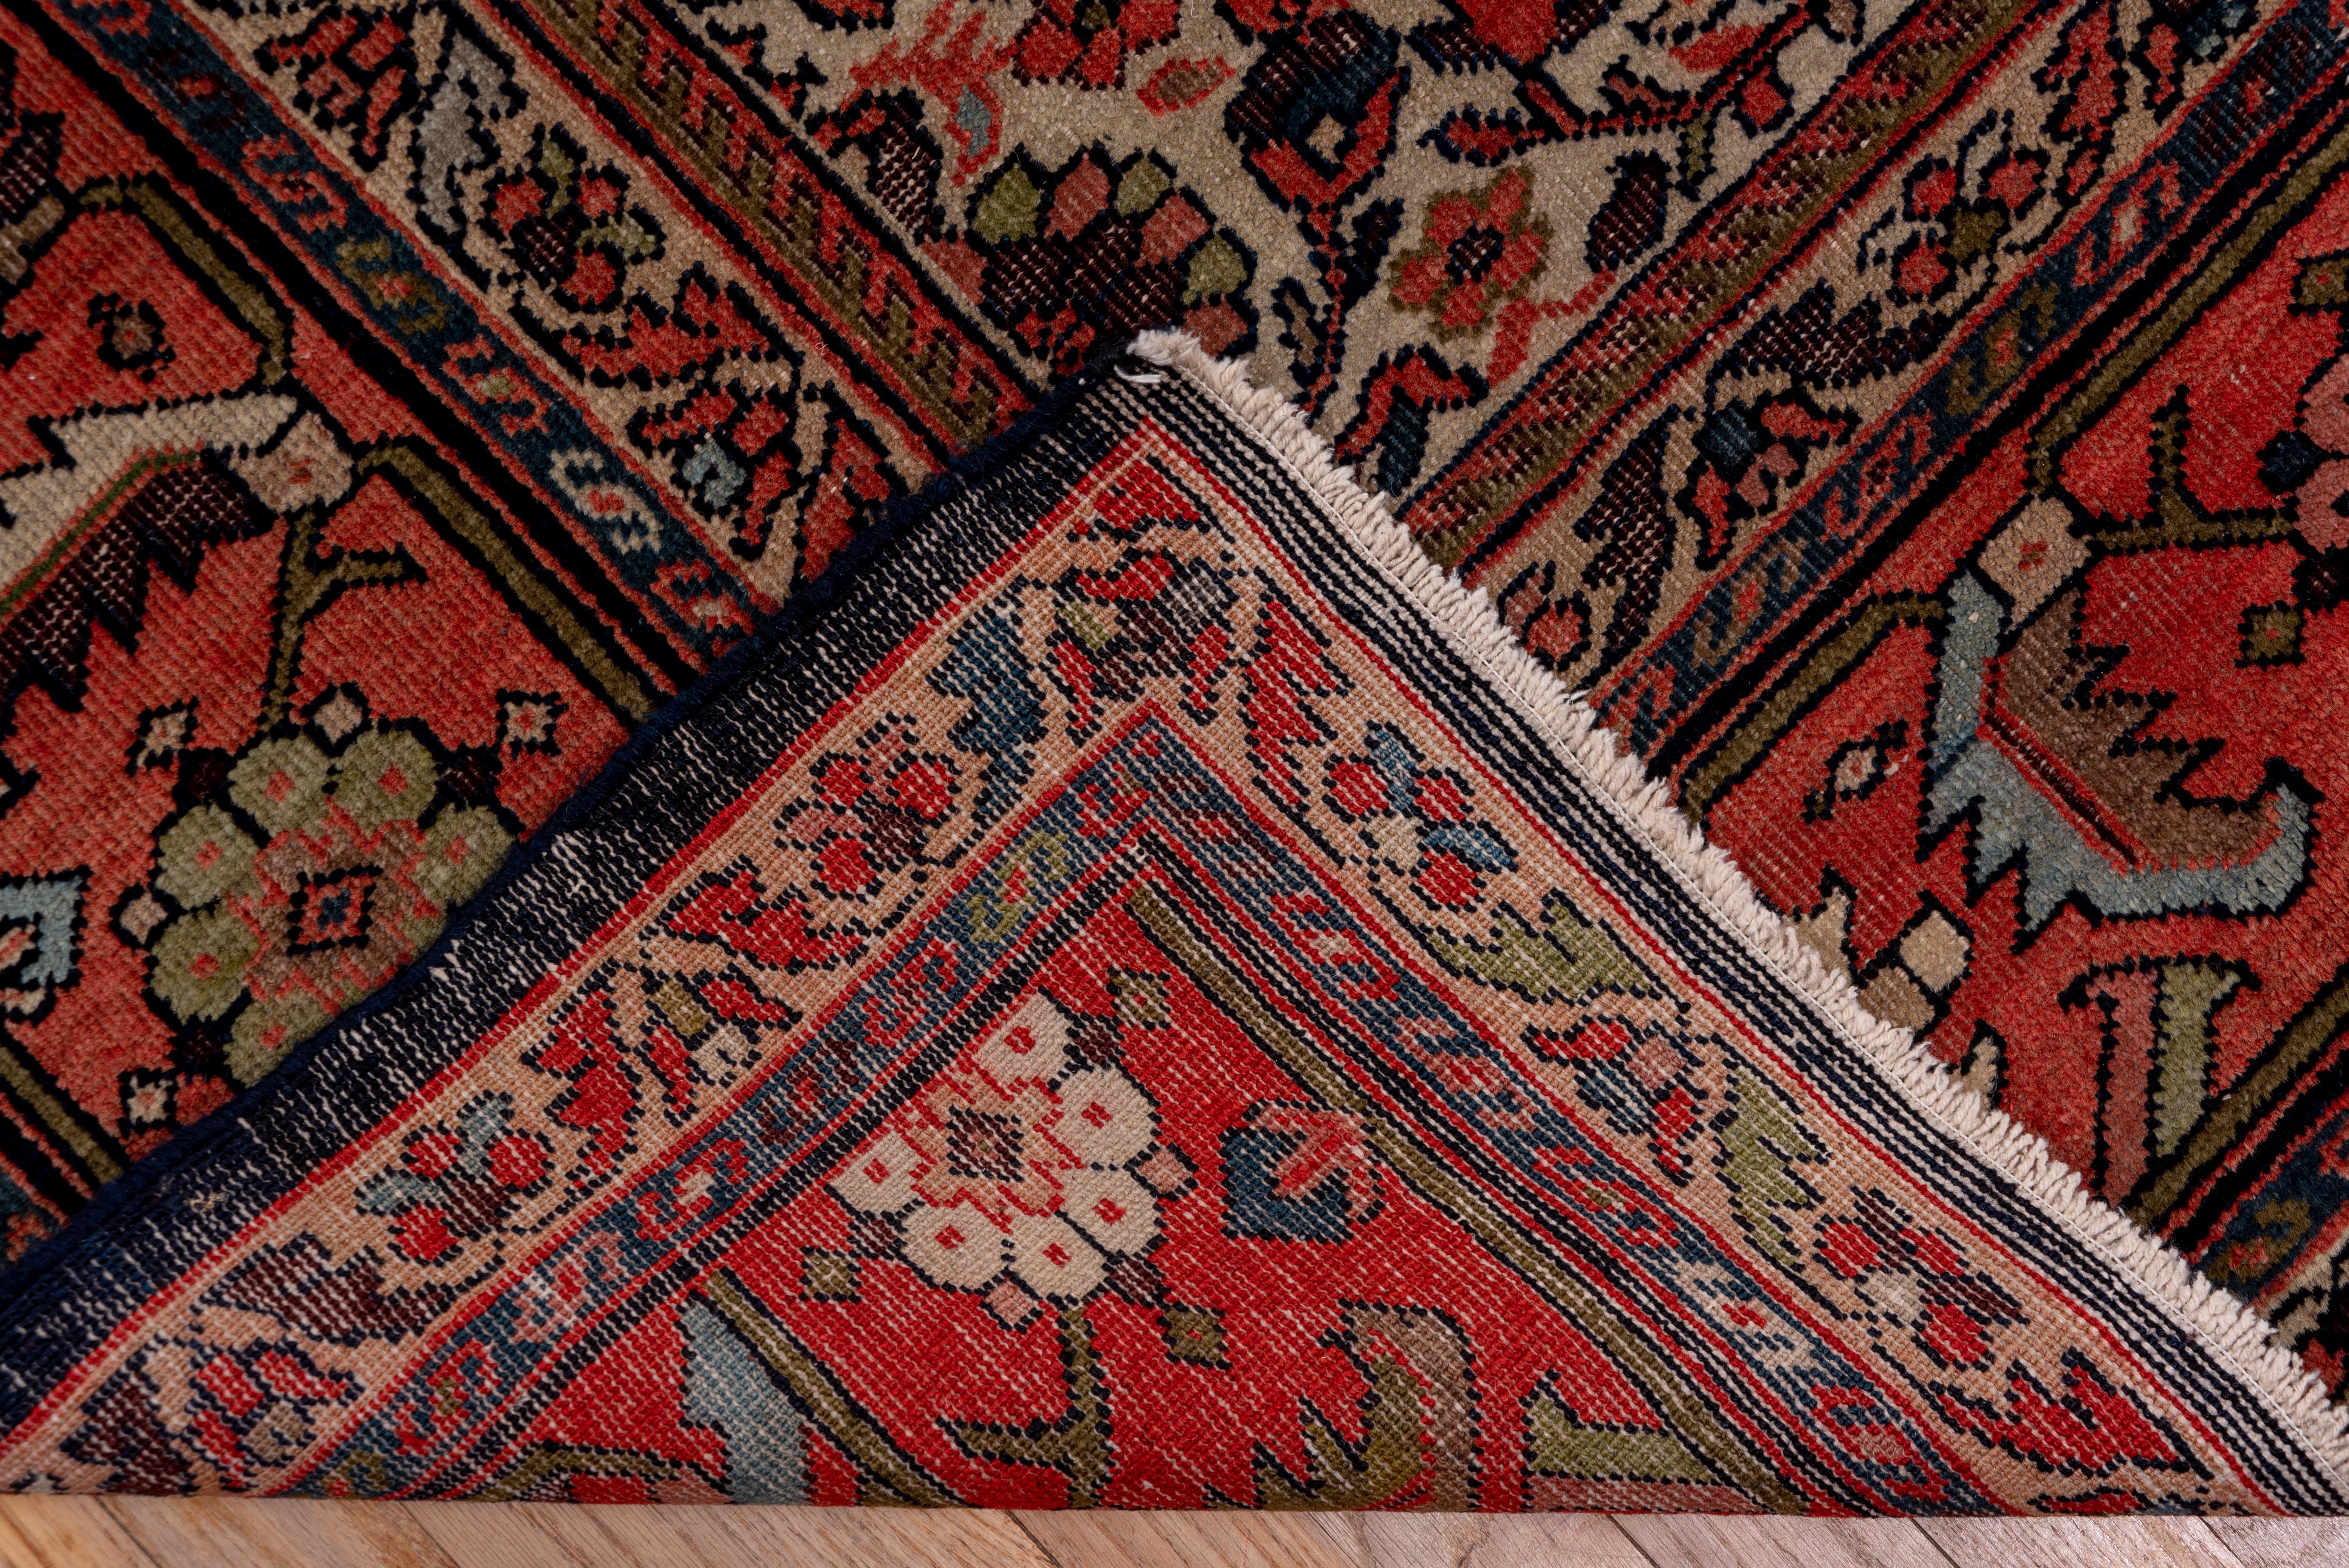 Hand-Woven Antique Persian Tribal Farahan Carpet, Circa 1920s